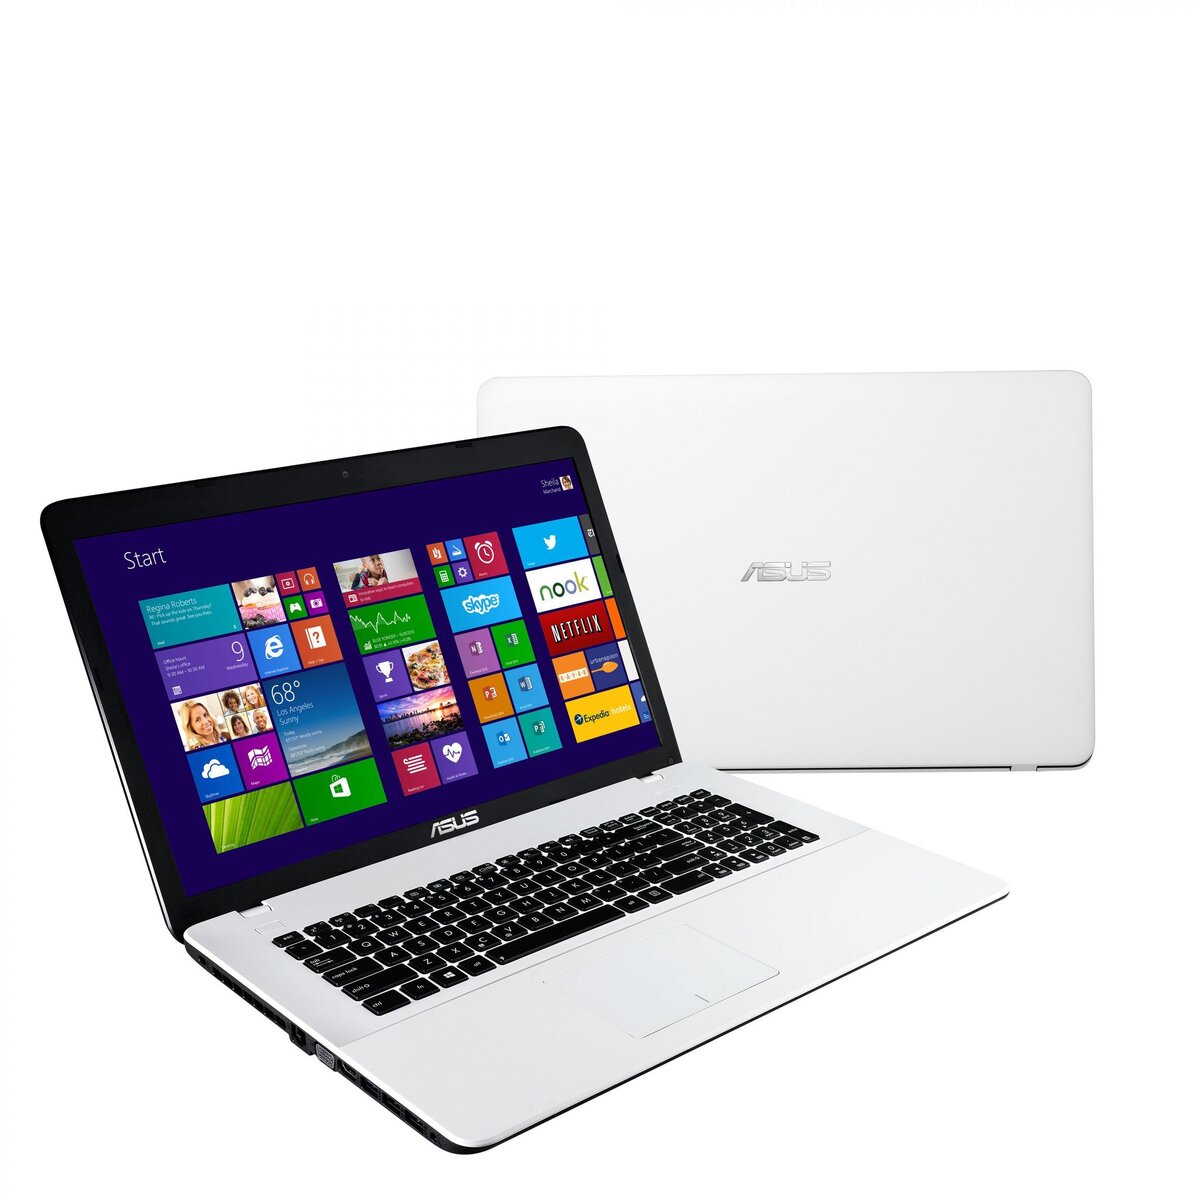 ASUS Ordinateur portable VivoBook Série X X751LJ-TY401T - Blanc